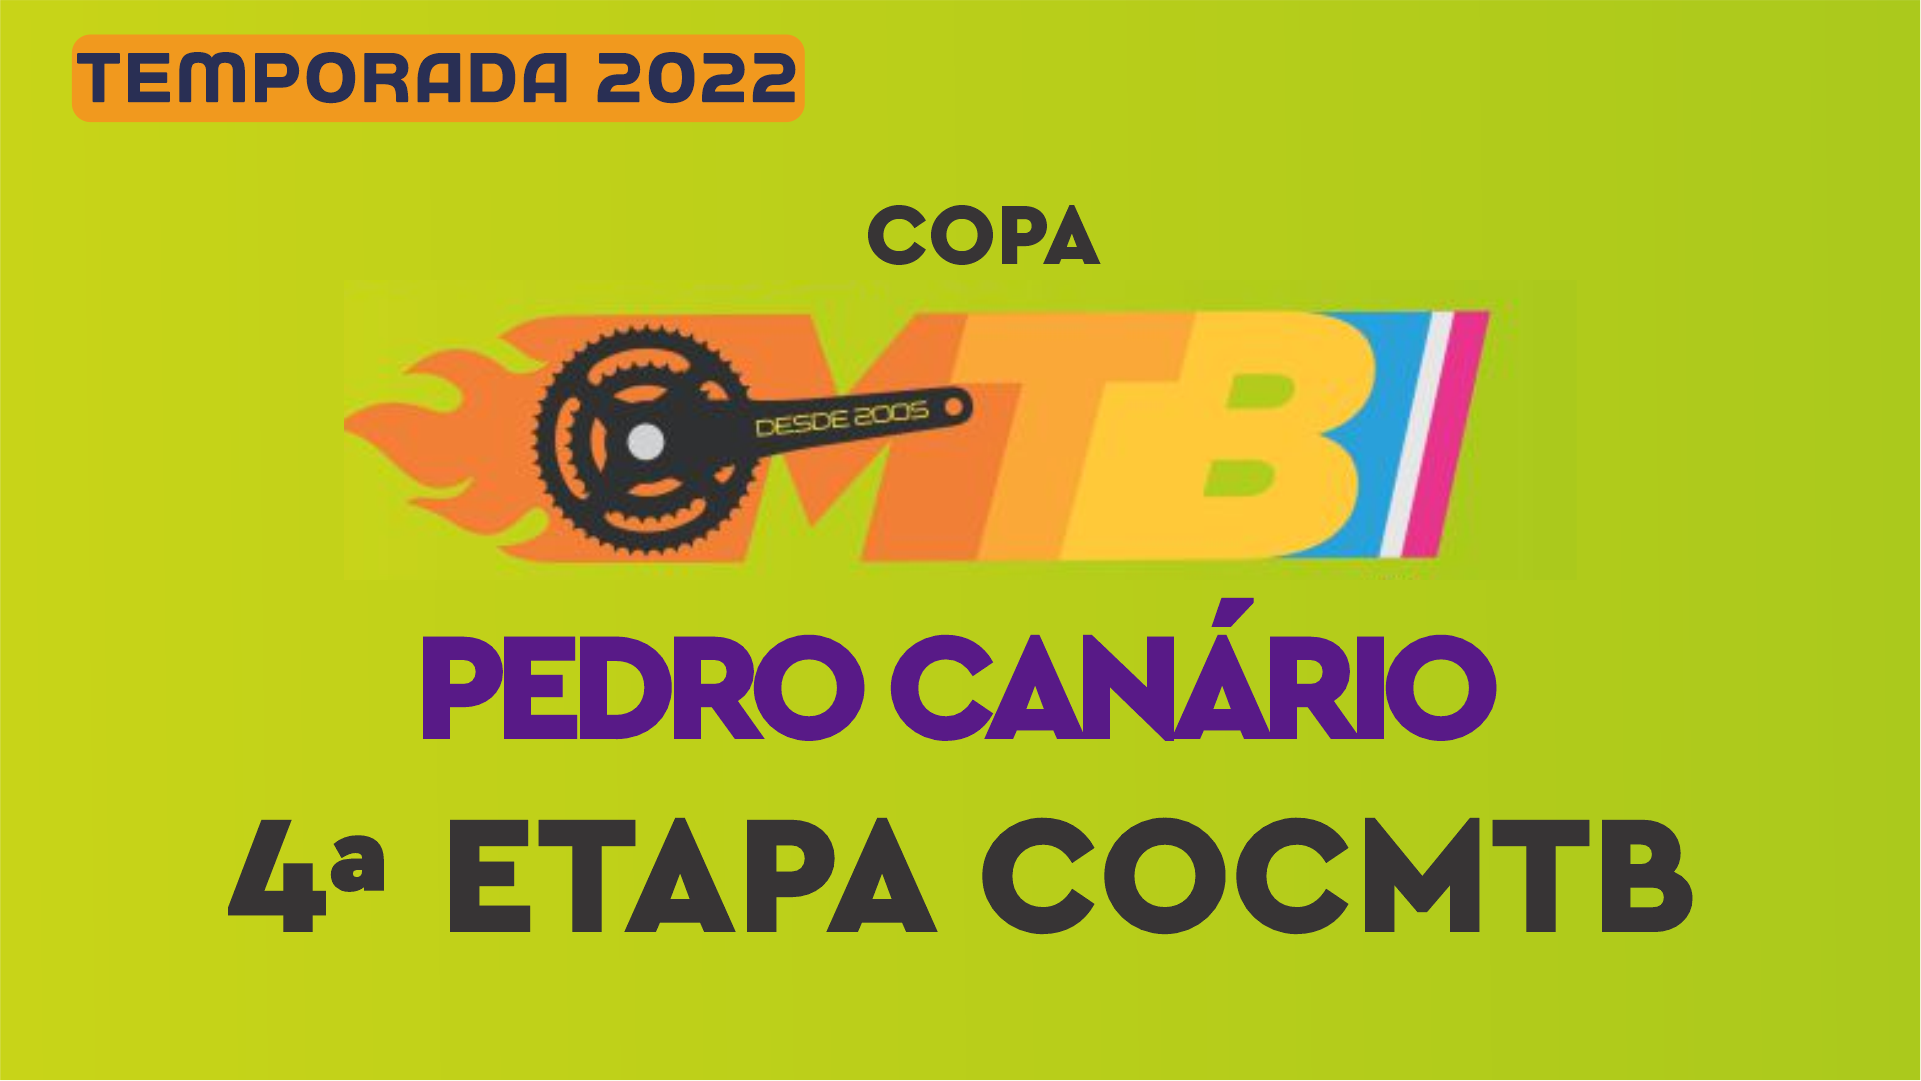 Pedro Canário recebe nos dias 24 e 25 de setembro 4º etapa da COCMTB